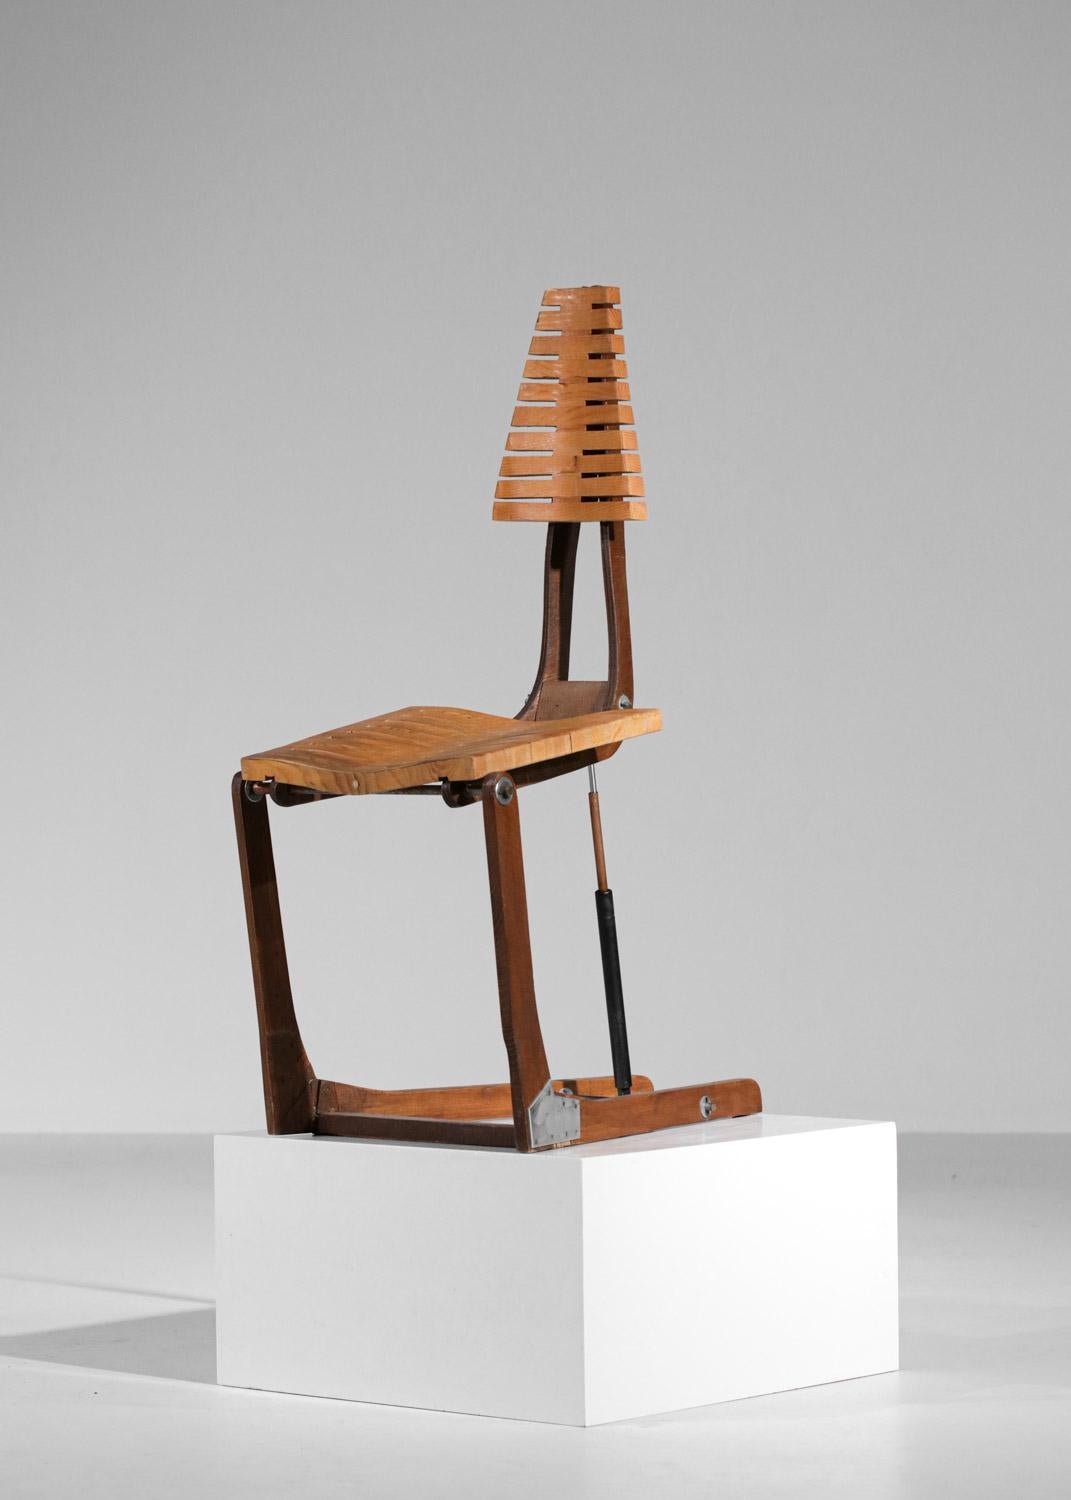 Französischer Stuhl aus den 80er Jahren, hergestellt von nicht identifizierten Handwerkern. Dieses einzigartige Modell (Prototyp) wurde mit einer Struktur komplett aus Massivholz und einem System von Buchsen, die die Höhe des Sitzes anpassen können,